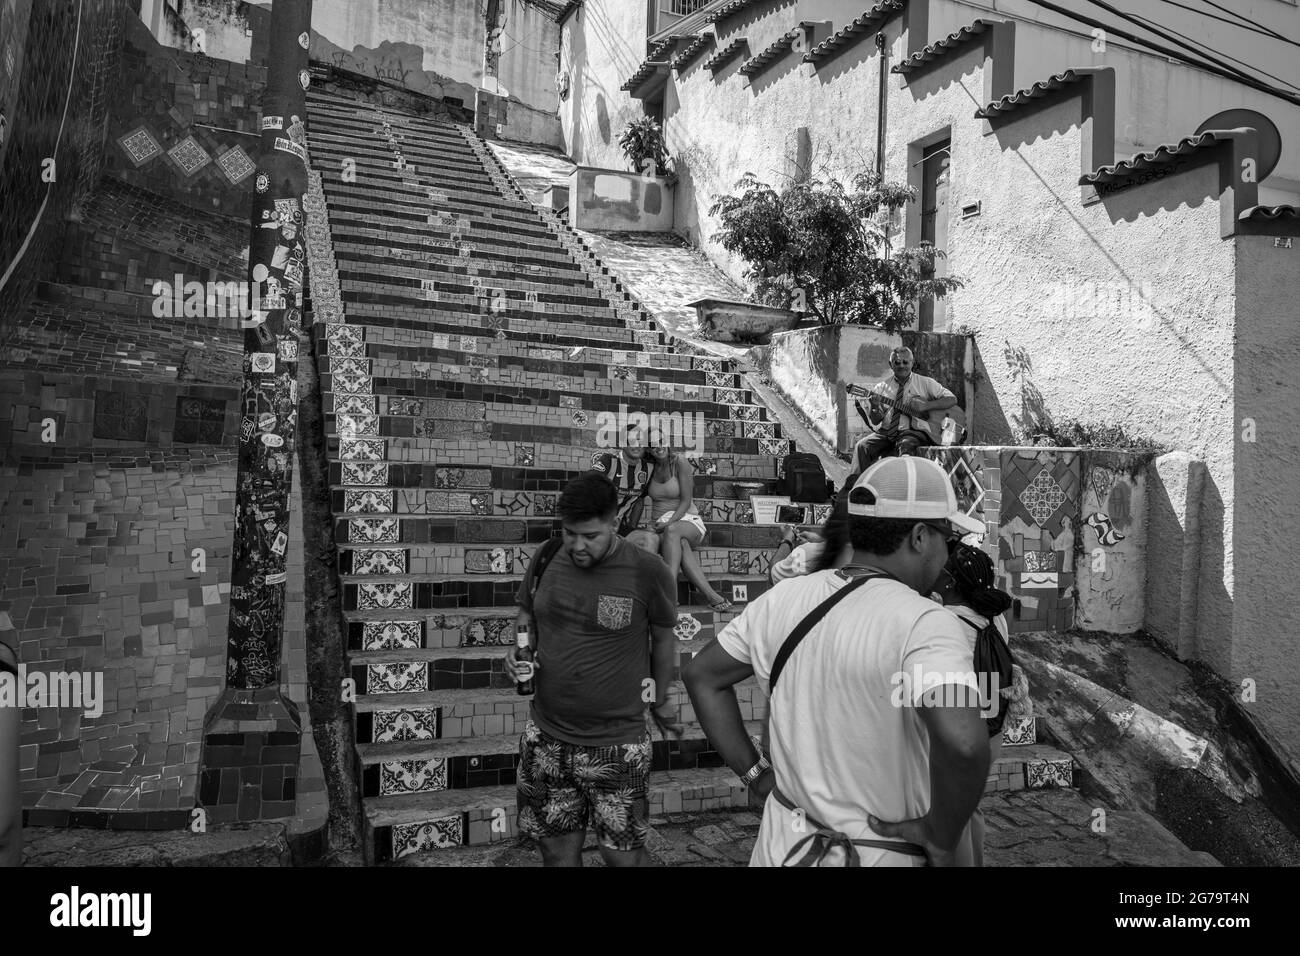 Les marches de Selaron (ou pas de Lapa) qui sont couvertes de carreaux colorés du monde entier, est l'une des principales attractions touristiques de Rio de Janeiro. Banque D'Images